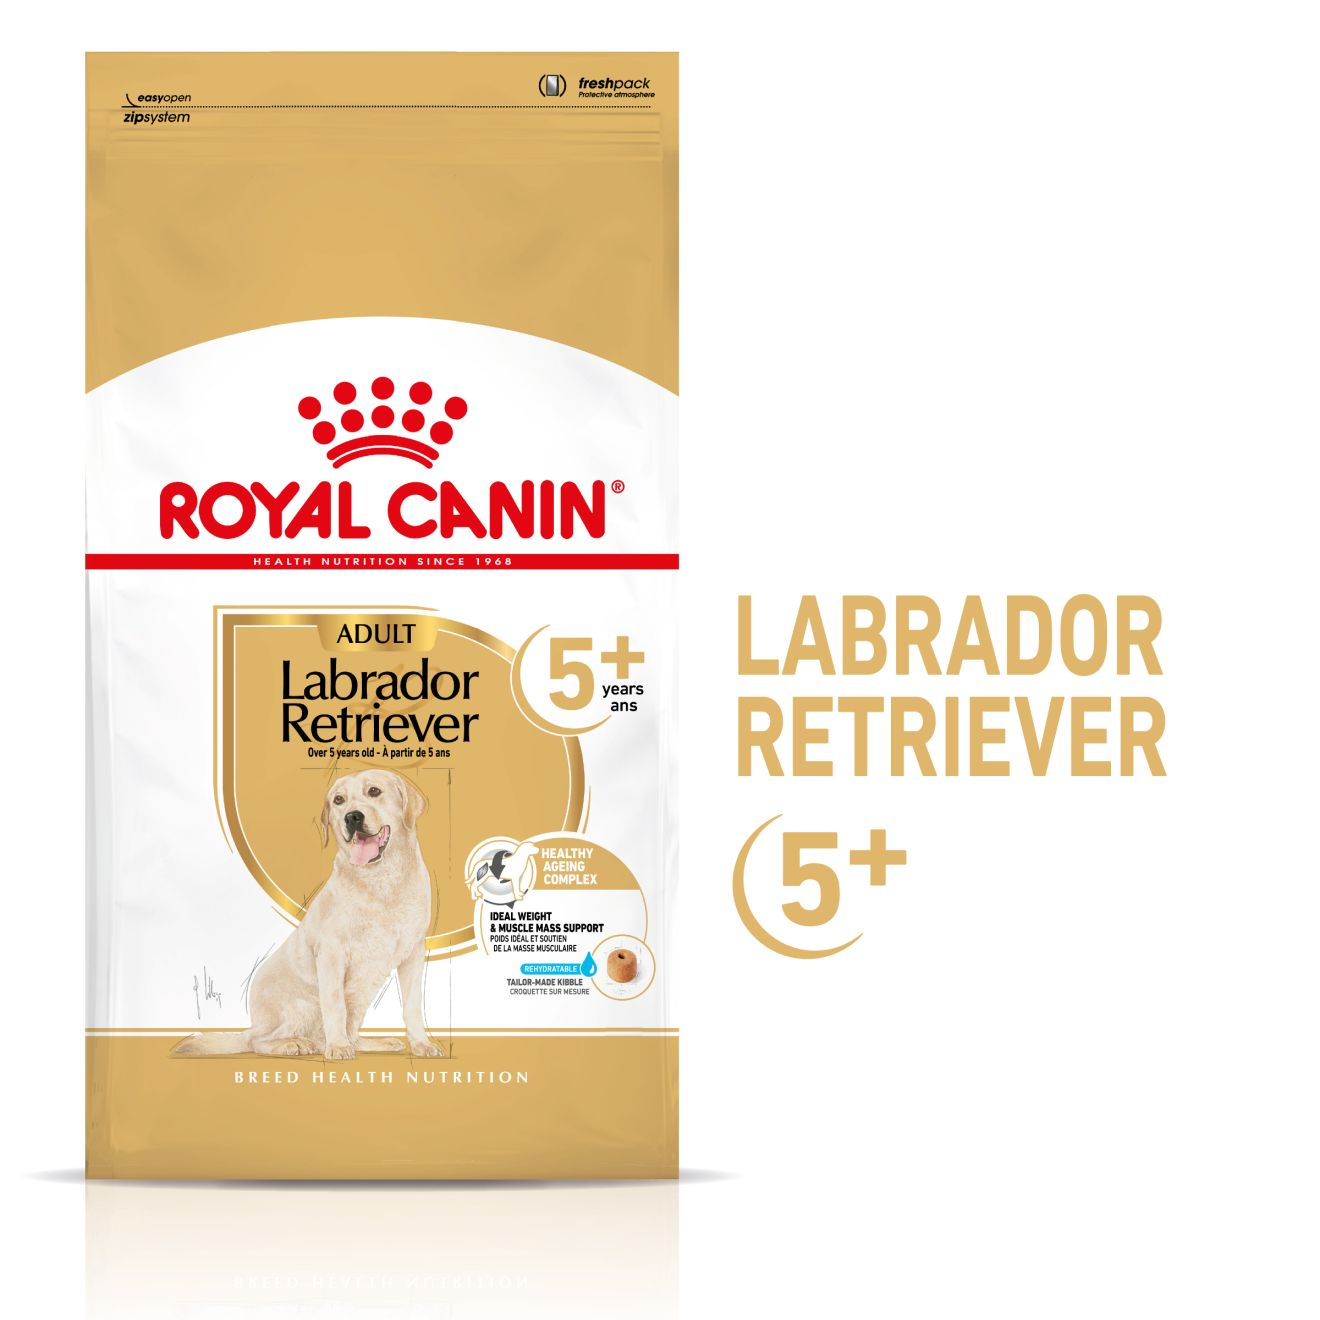 Labrador Retriever 5+